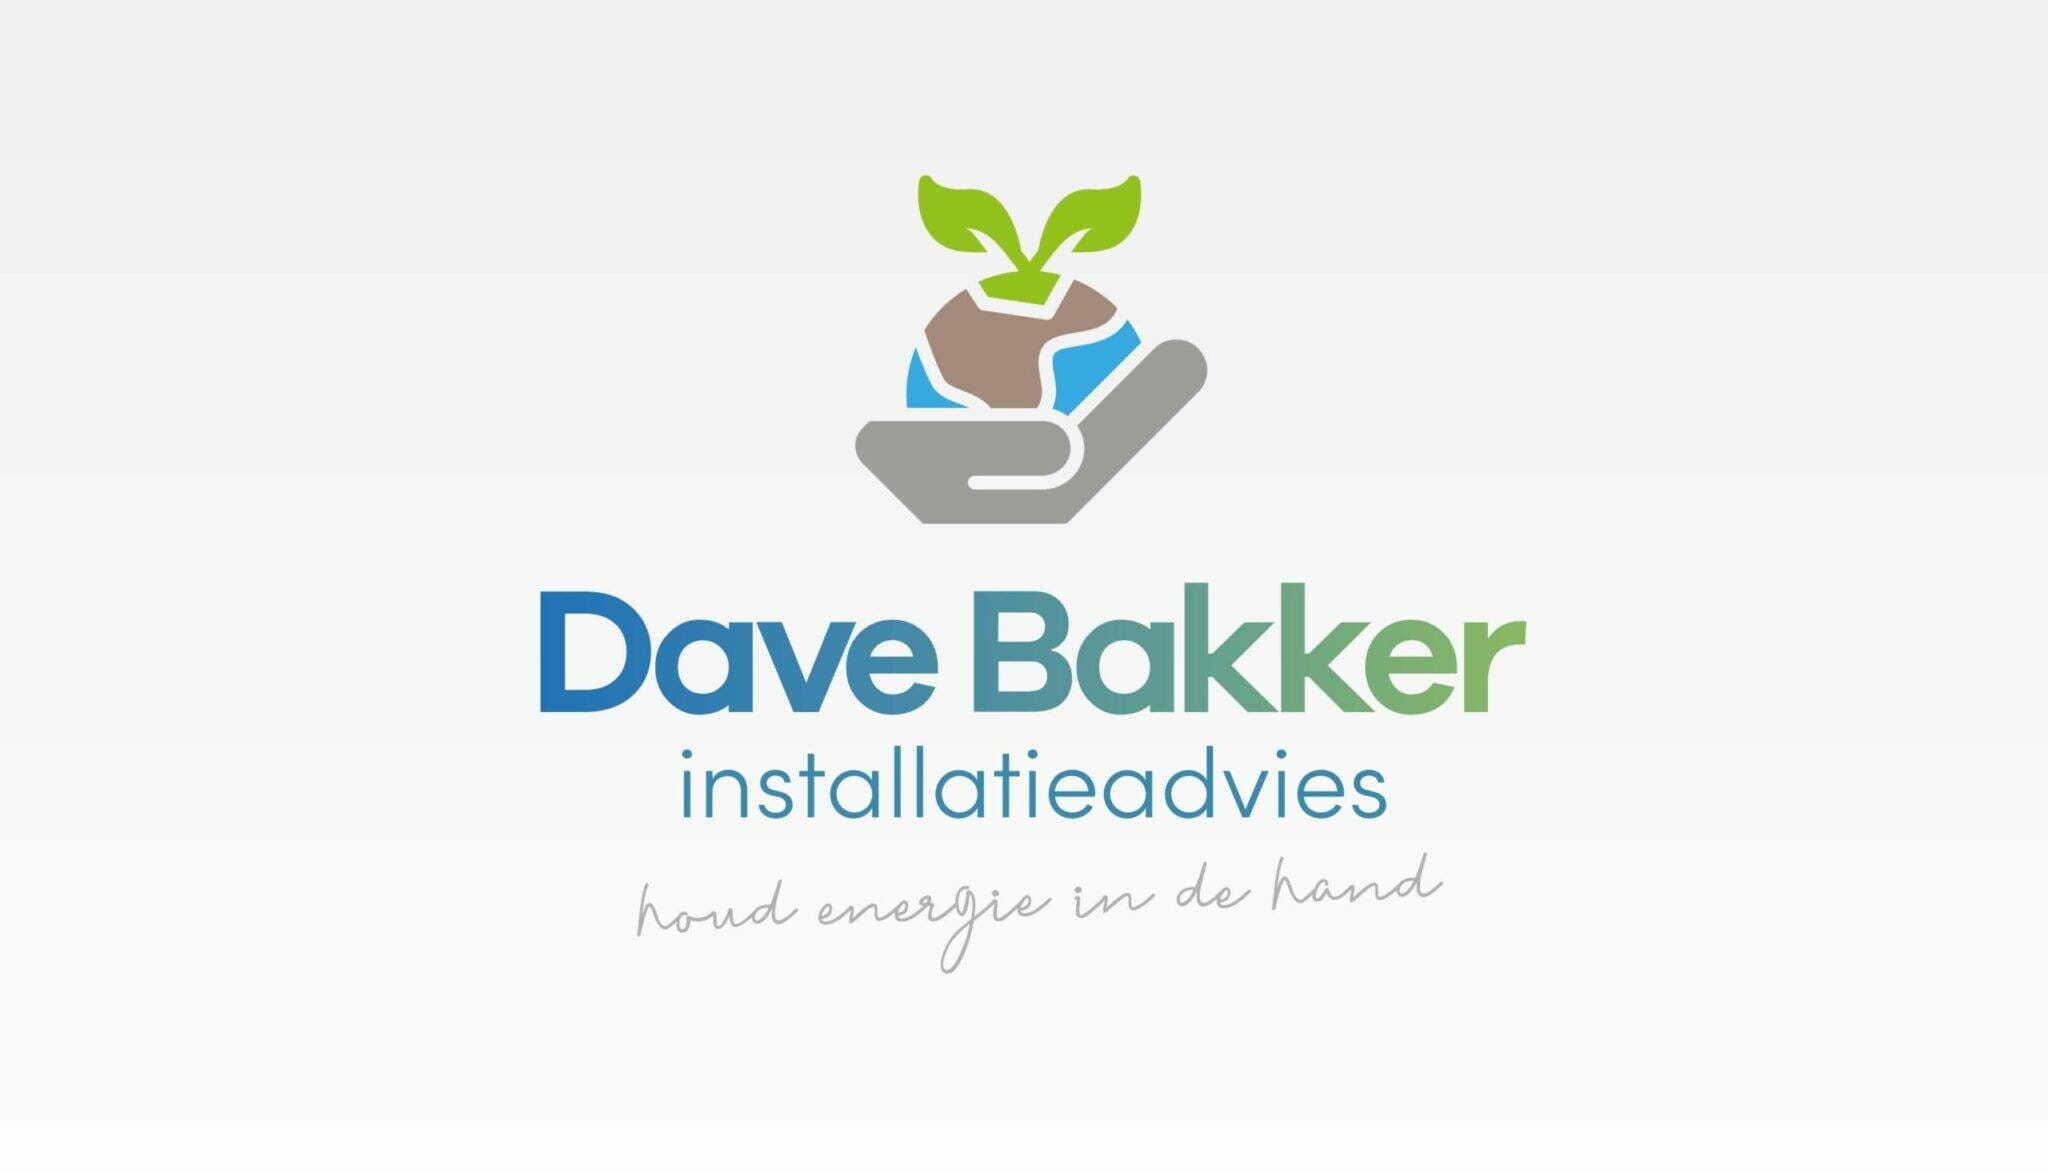 DaveBakker Profil skaliert